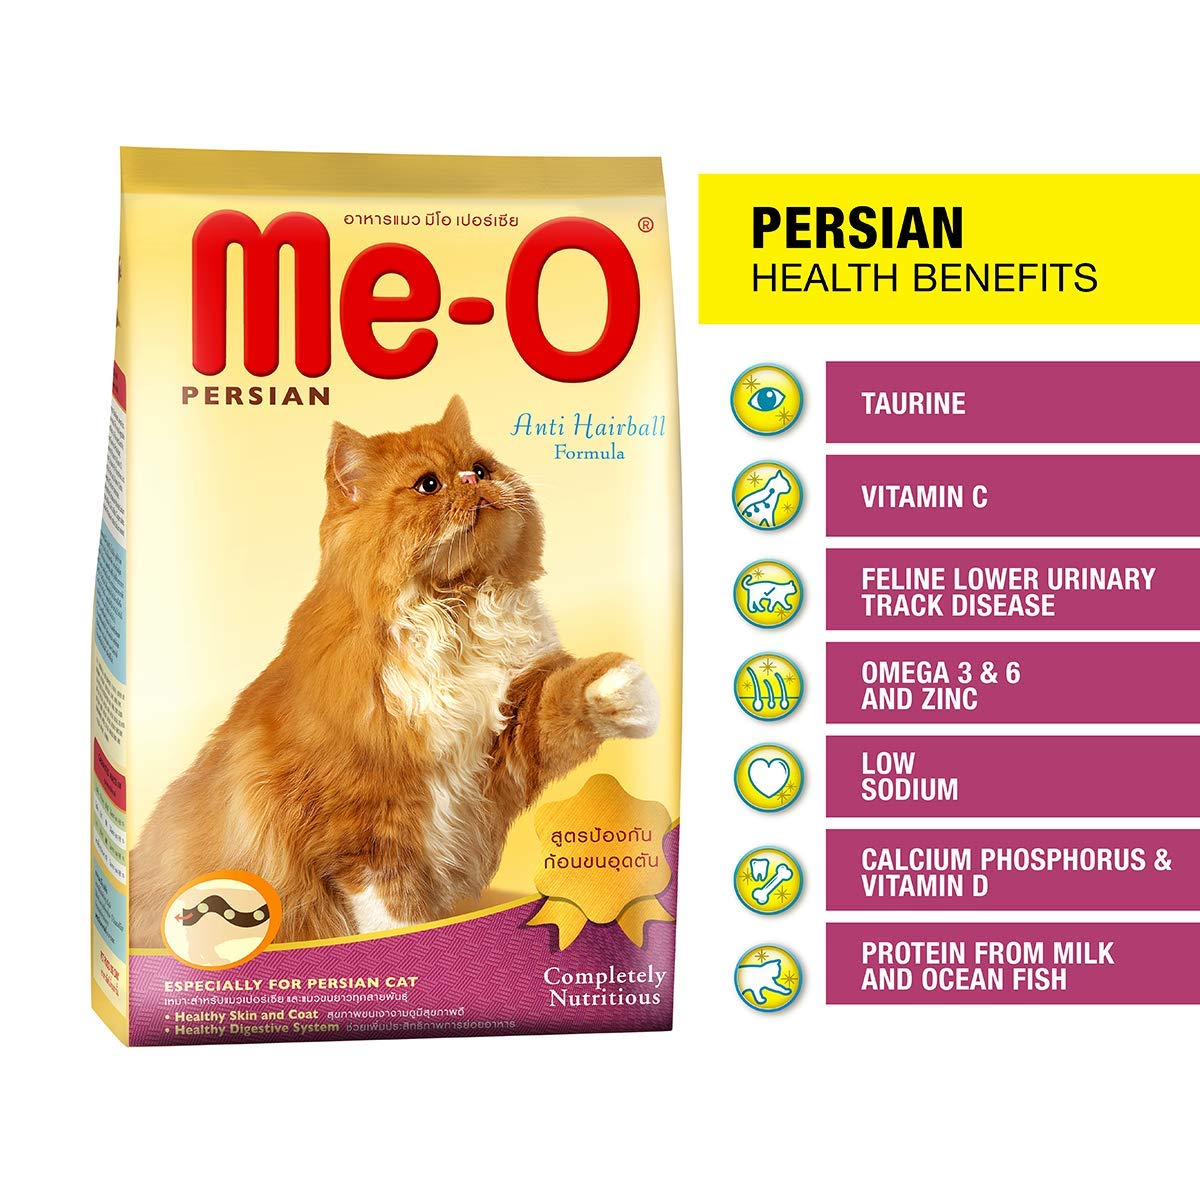 MeO Persian Cat Dry Food